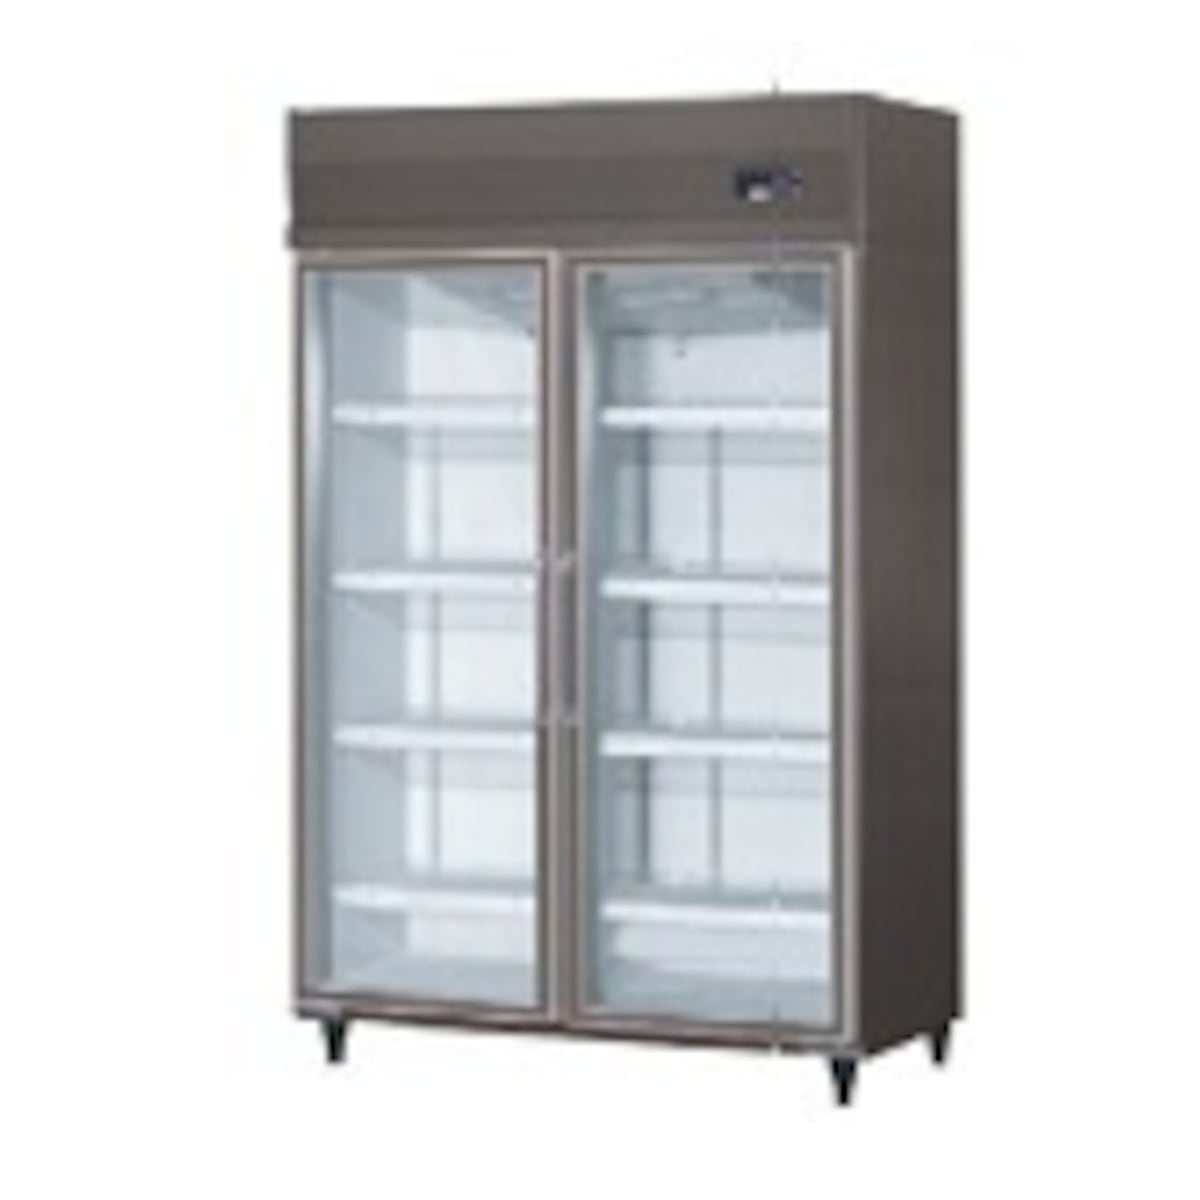 Daiwaリーチイン冷蔵ショーケース（機械上置、インバータ制御）エコ蔵くん dairei